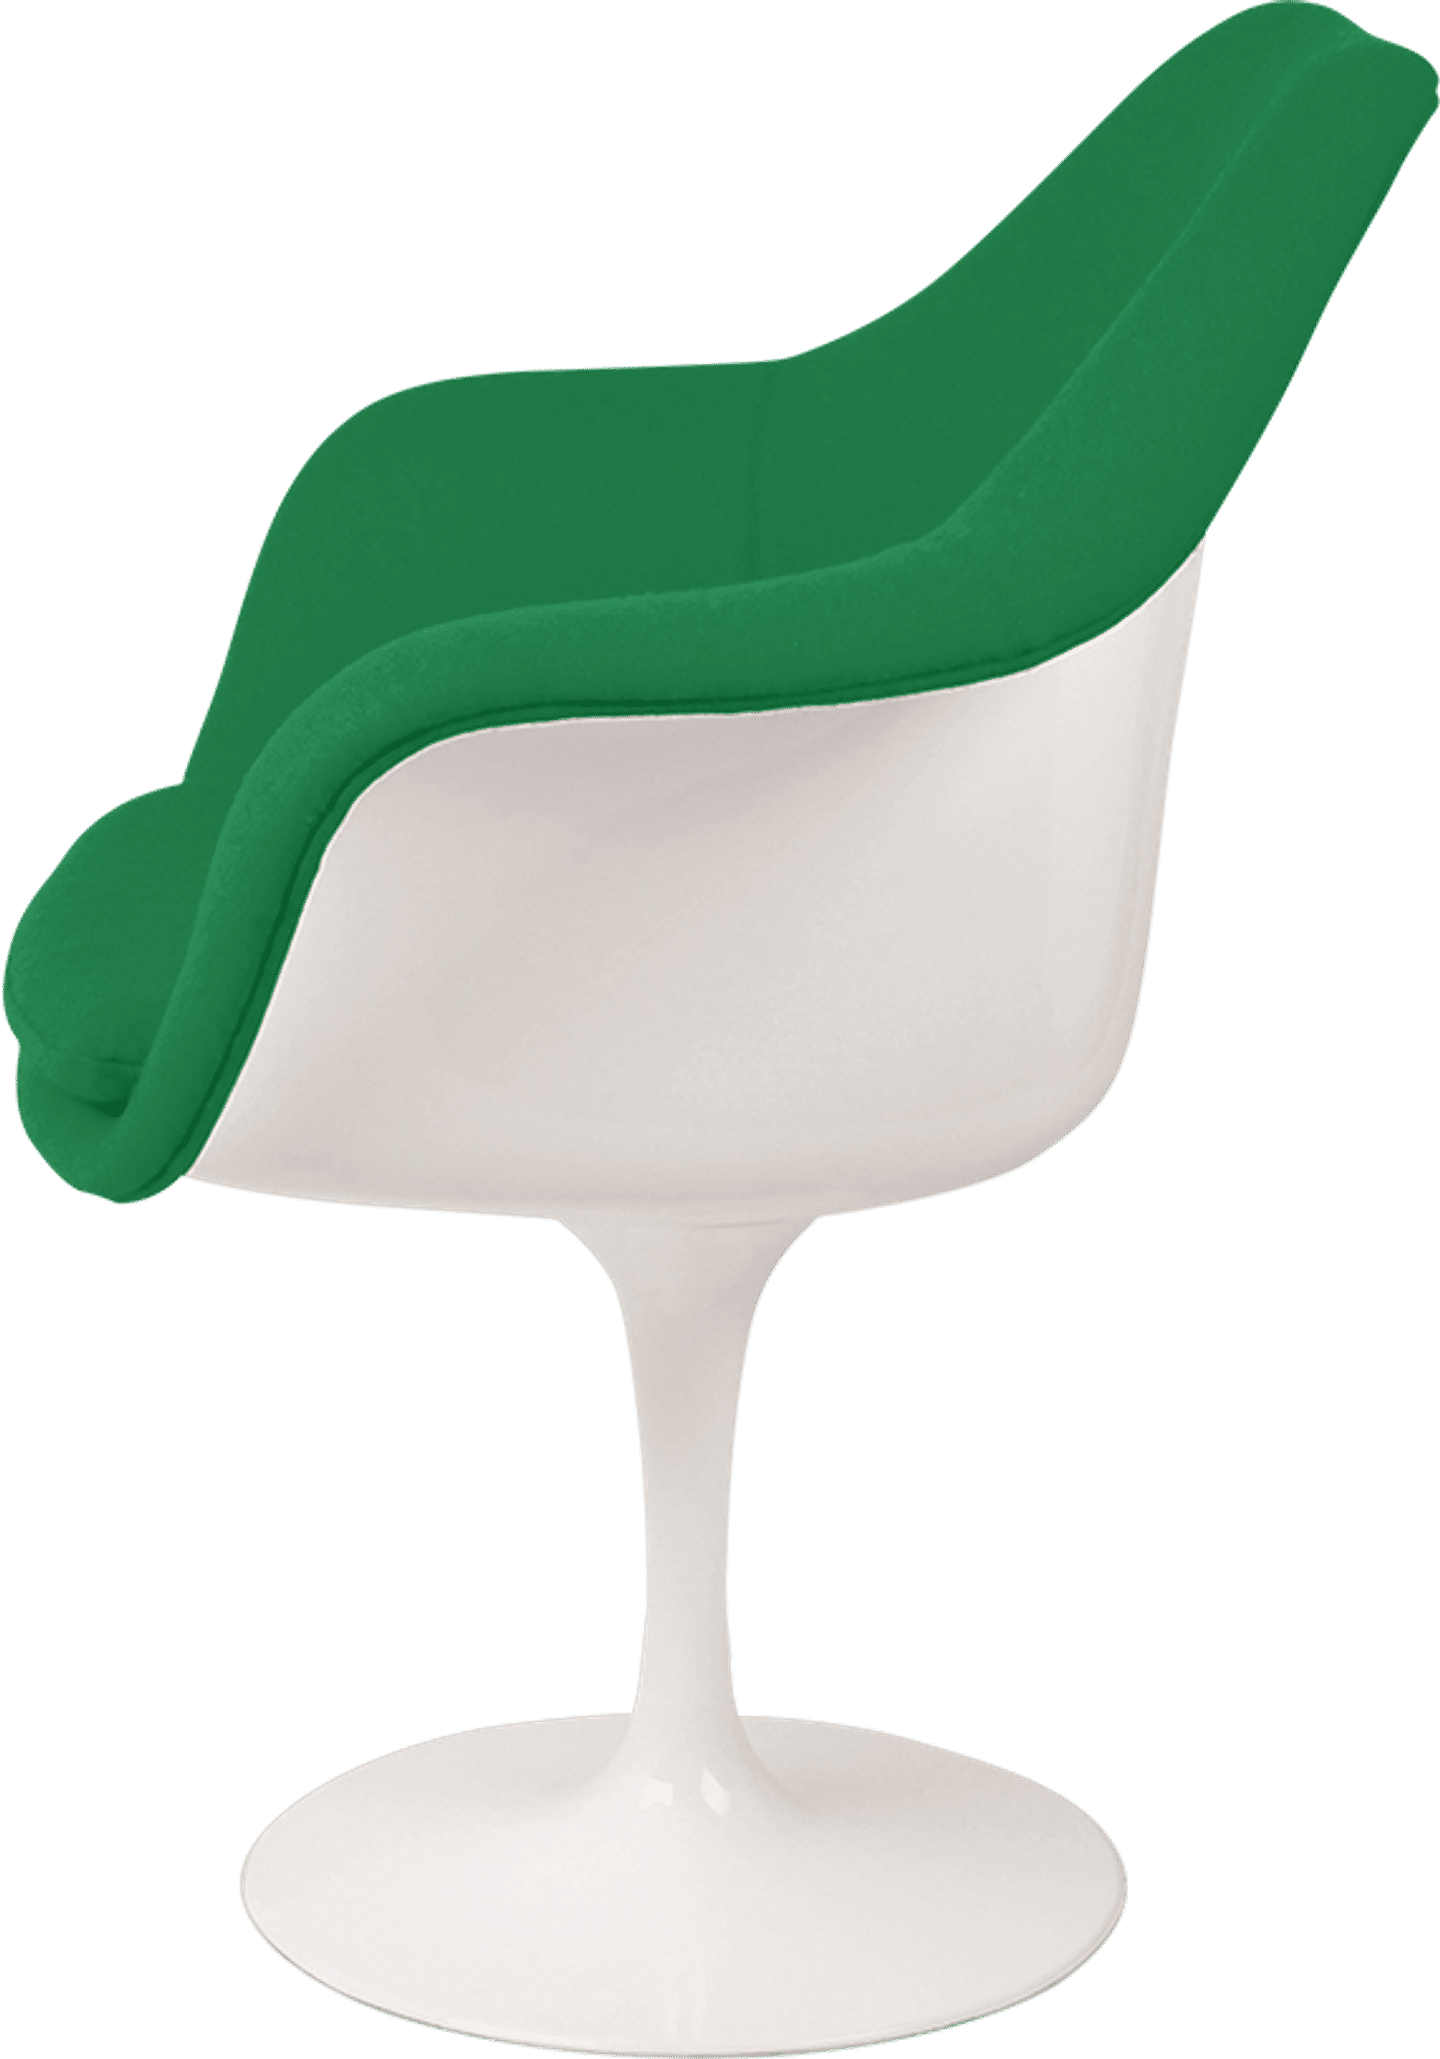 Silla Tulip Carver Green/White image.